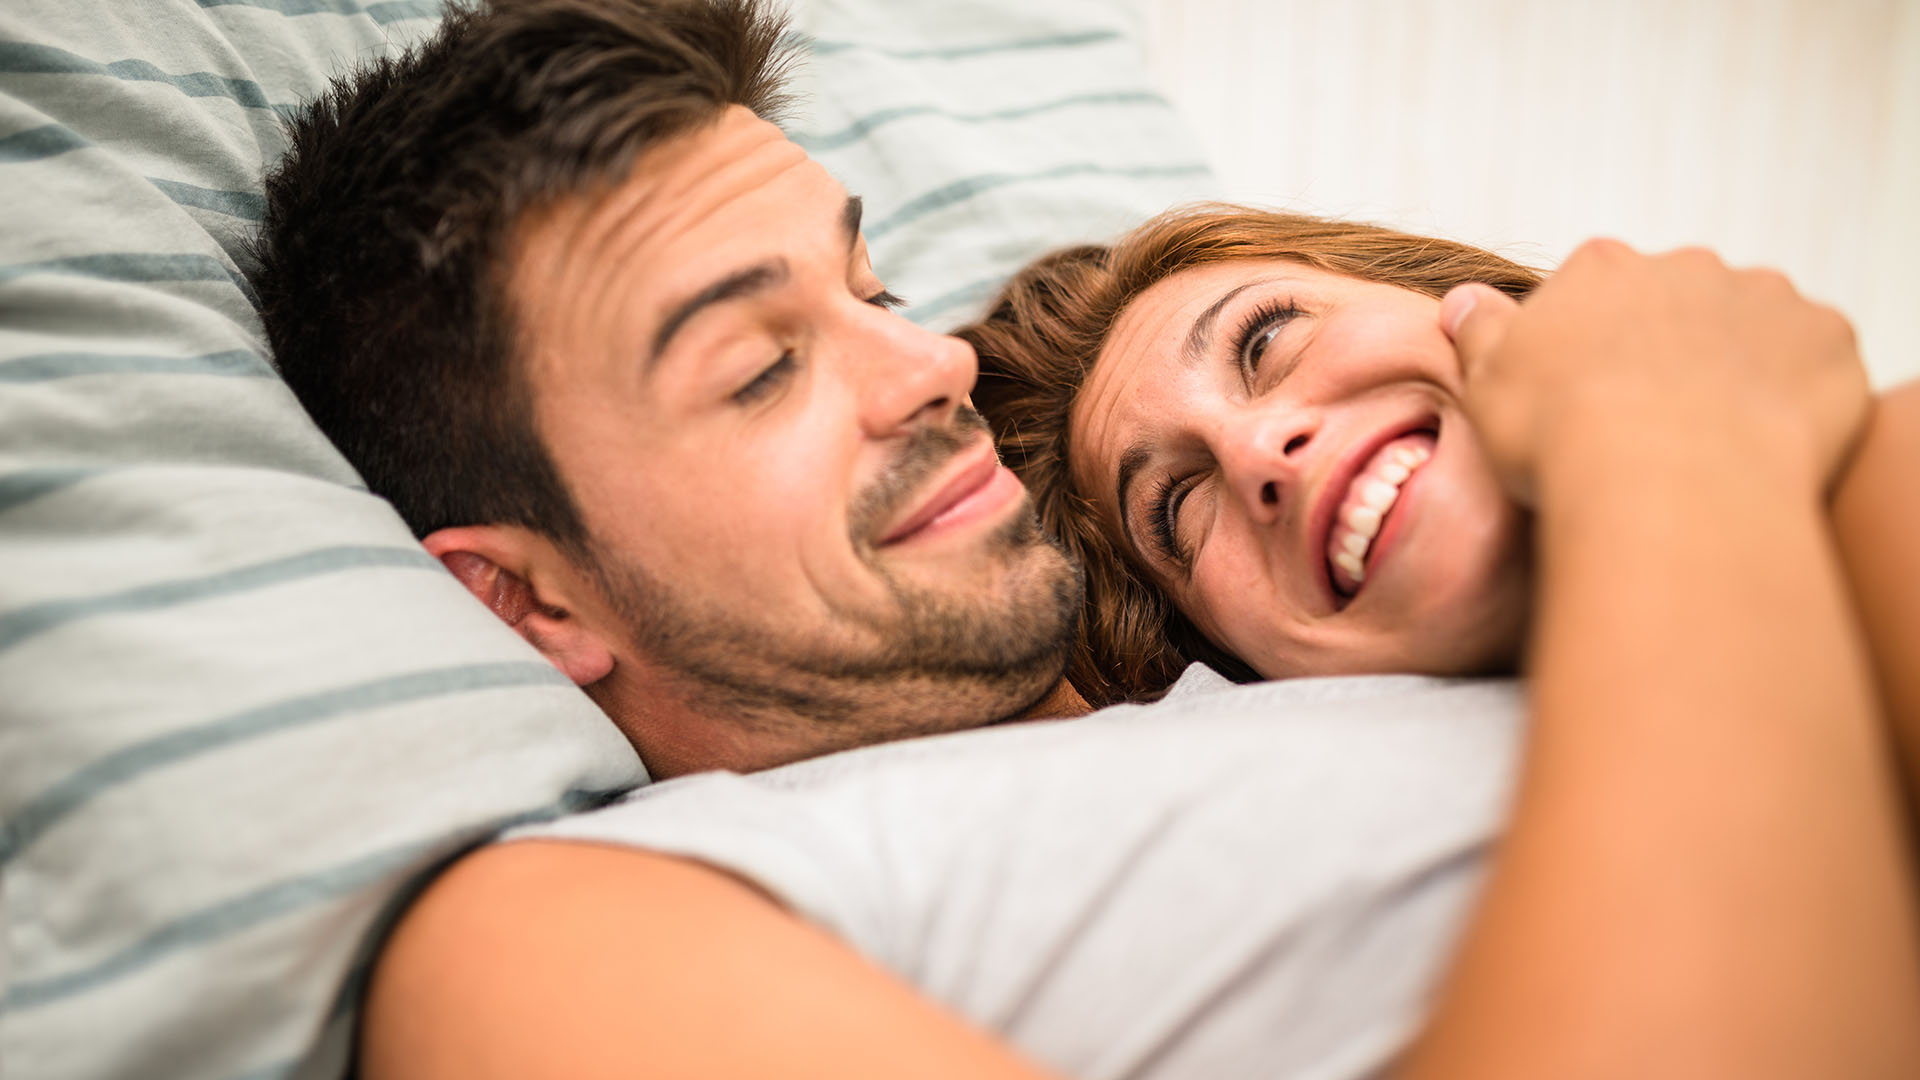 Después del orgasmo, la liberación de sustancias químicas como la oxitocina, la prolactina, el ácido gamma-amnobutírico (GABA) y las endorfinas contribuyen a esa sensación de no poder controlar el sueño
(Getty Images)